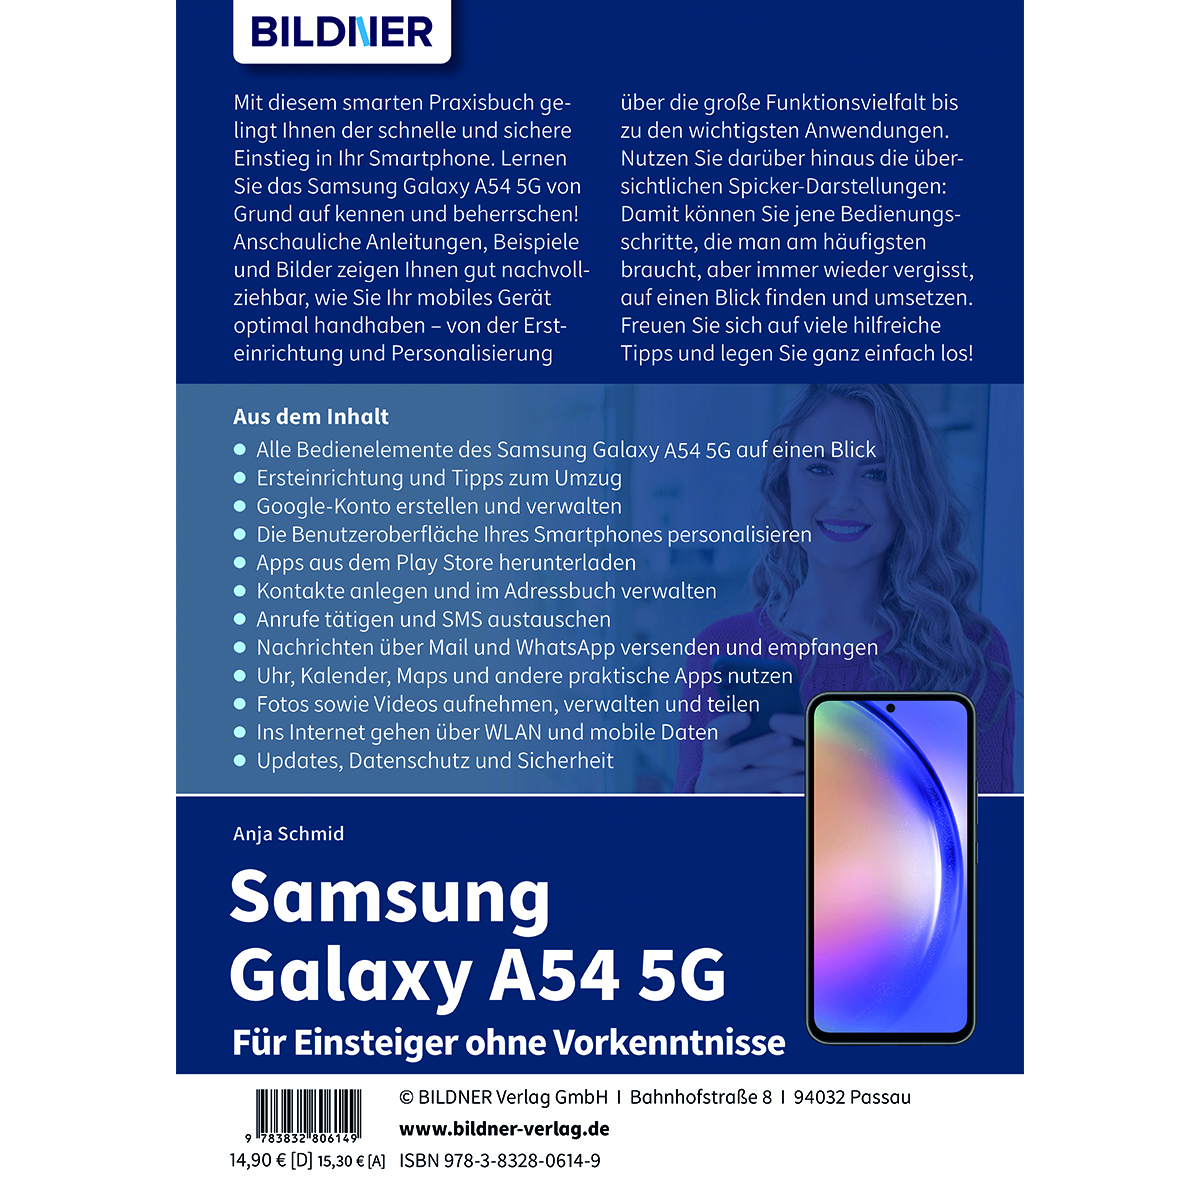 Samsung Galaxy Für A54 - ohne Vorkenntnisse Einsteiger